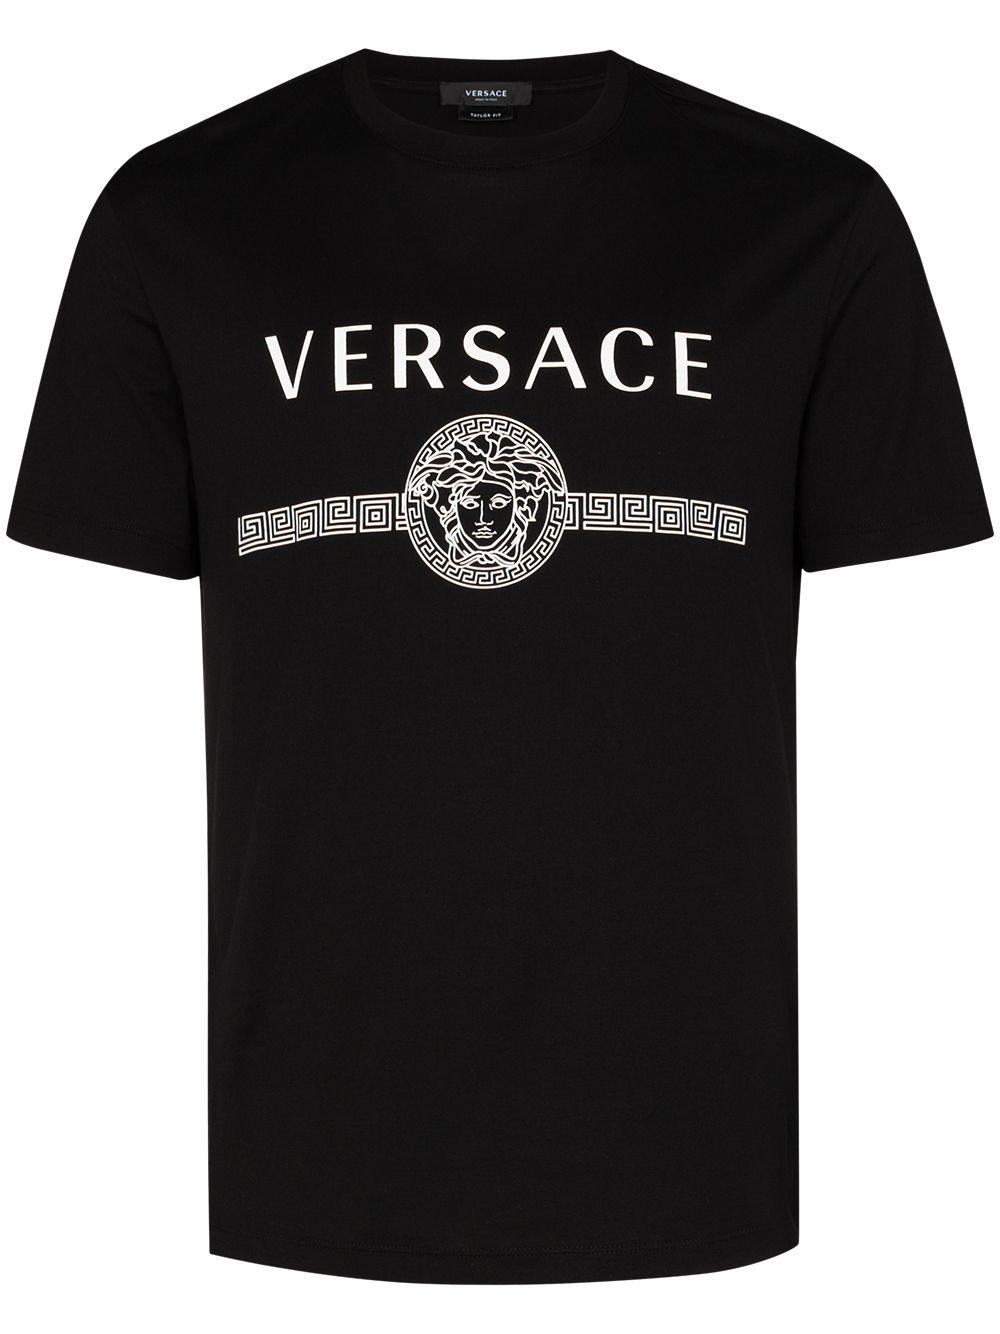 Versace Medusa Logo Print T-shirt in Black for Men - Lyst